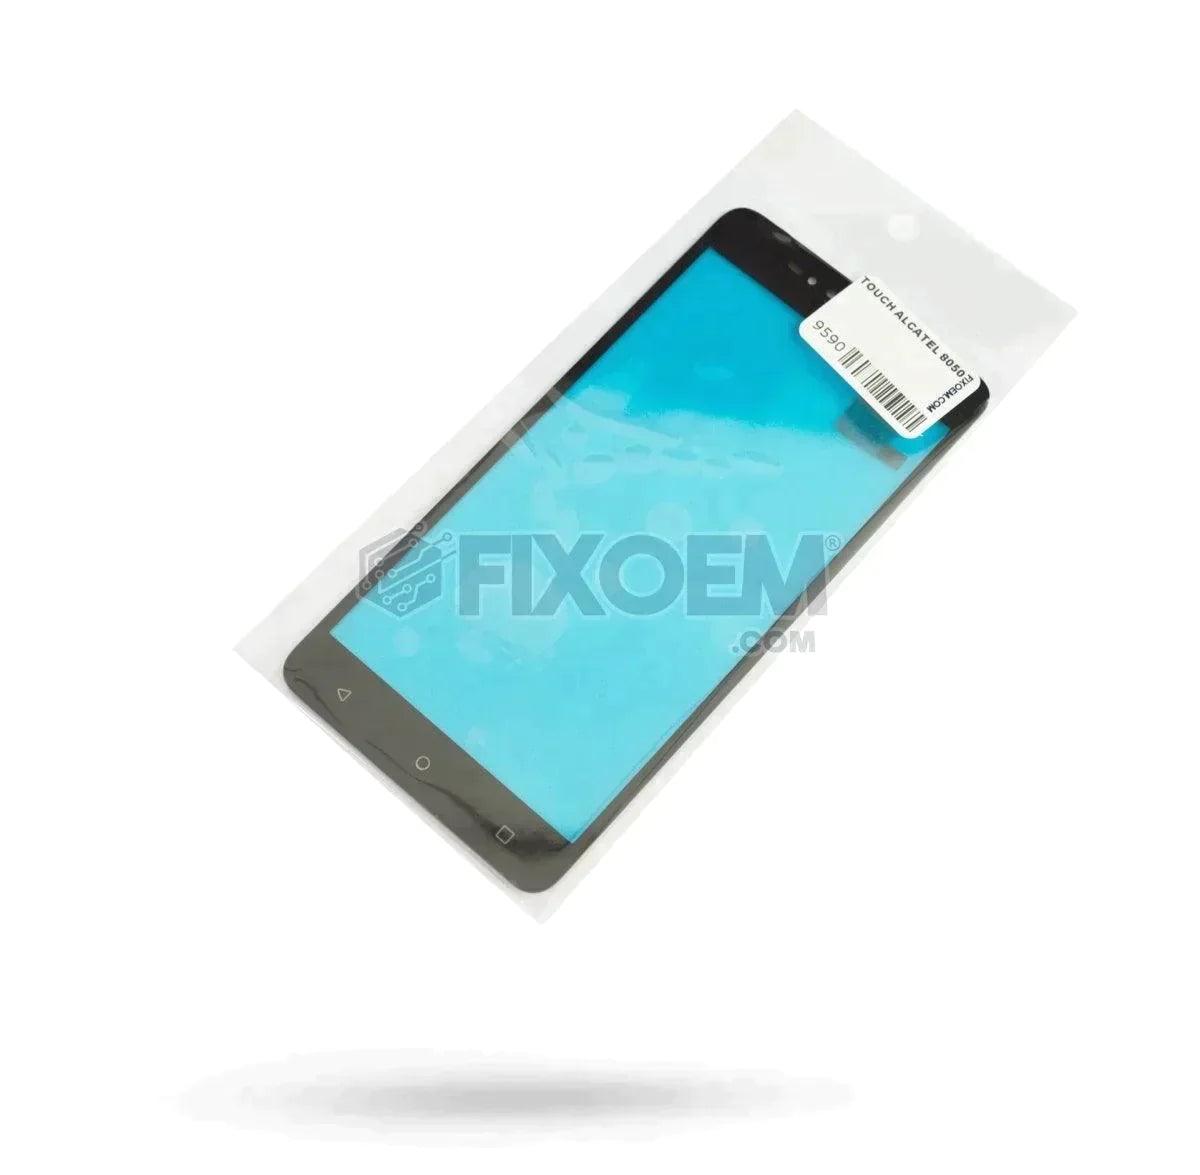 Touch Alcatel Pixi 4 6.0 8050 a solo $ 90.00 Refaccion y puestos celulares, refurbish y microelectronica.- FixOEM